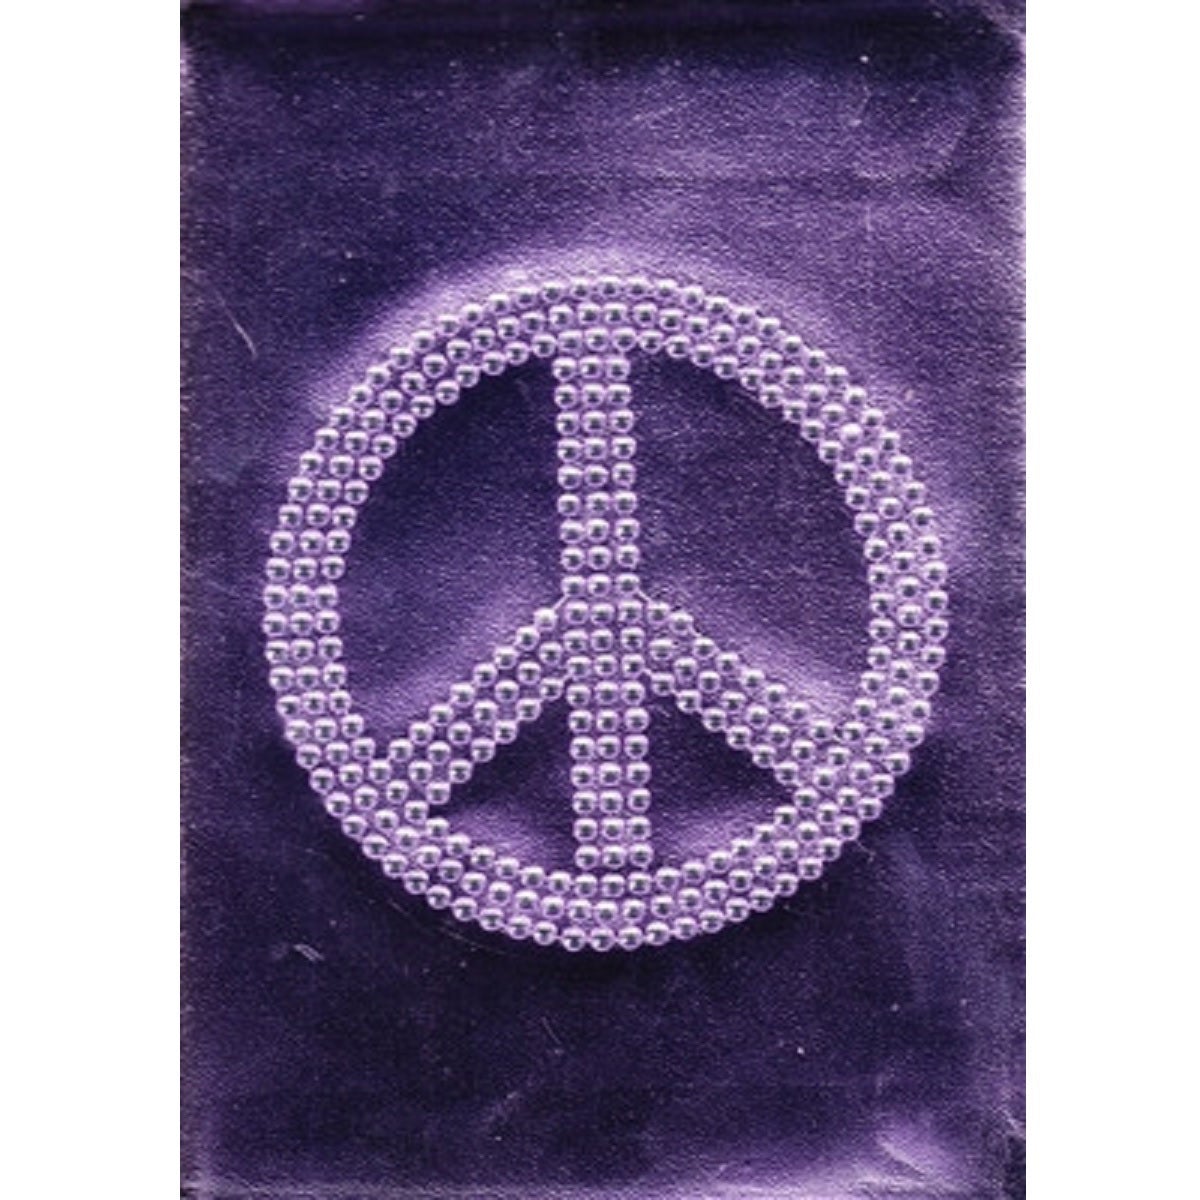 Bling Purple Peace Journal